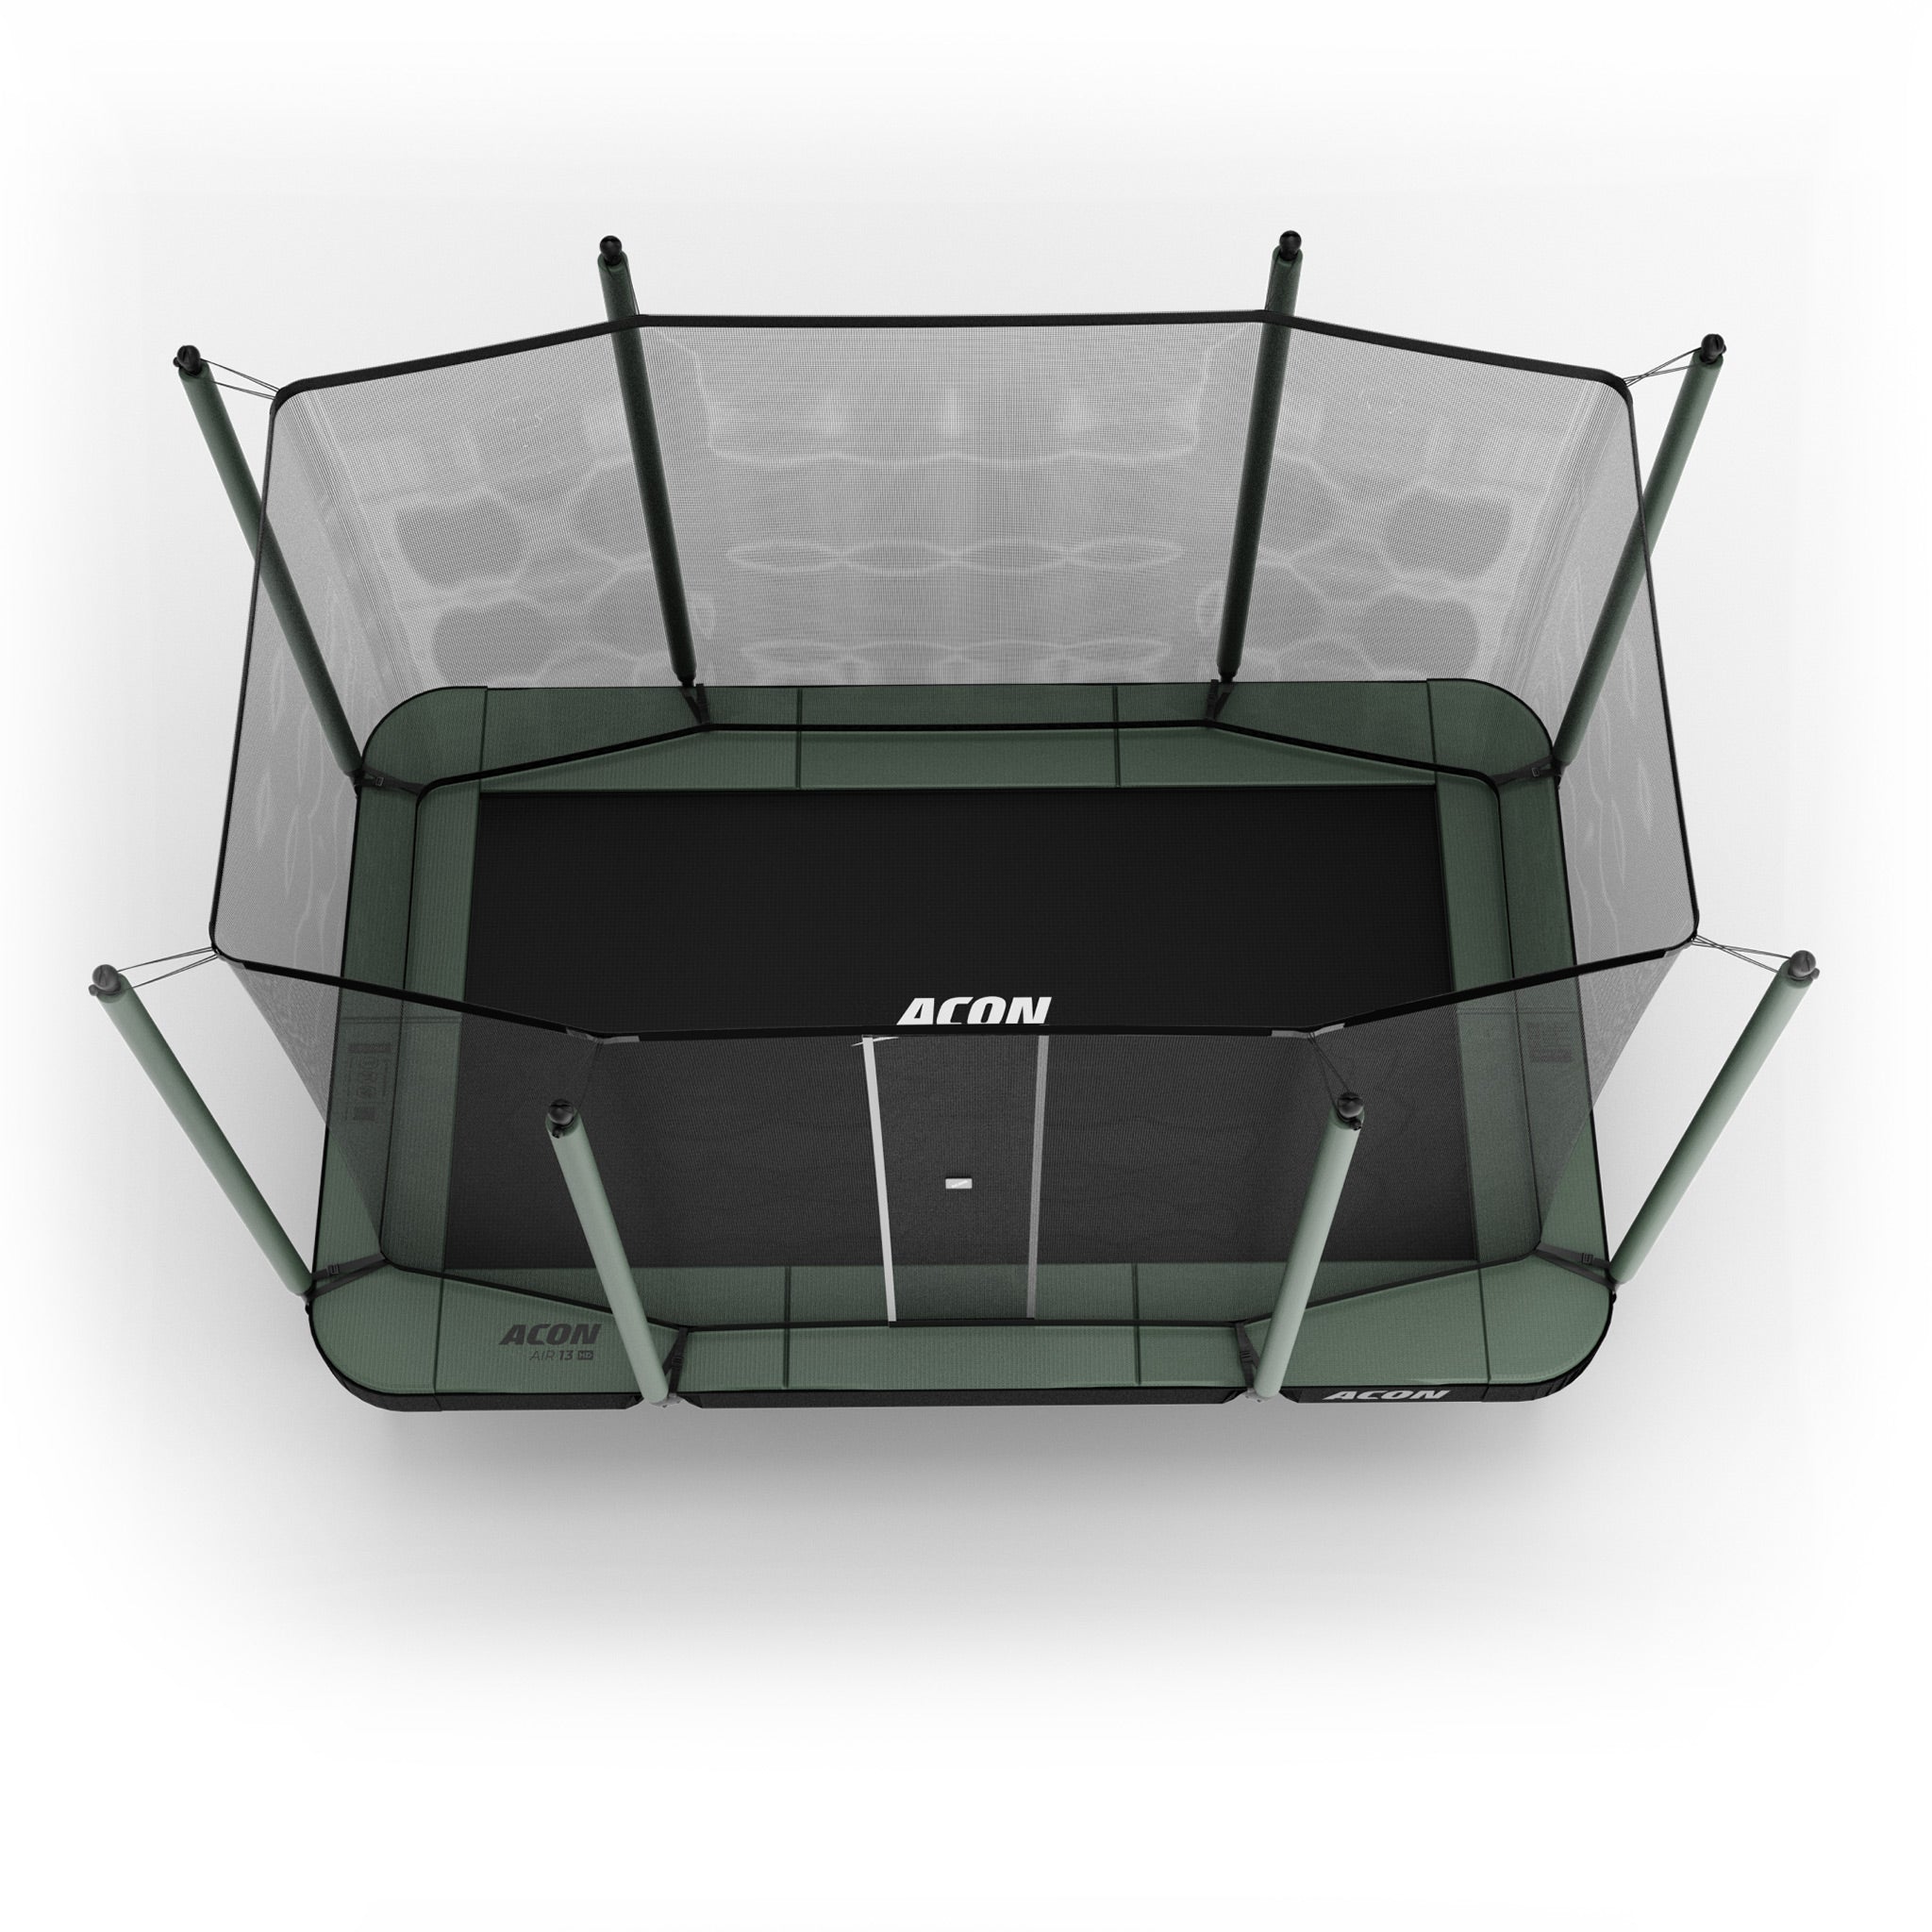 ACON 13 Sport HD -trampoliini ylhäältä katsottuna.